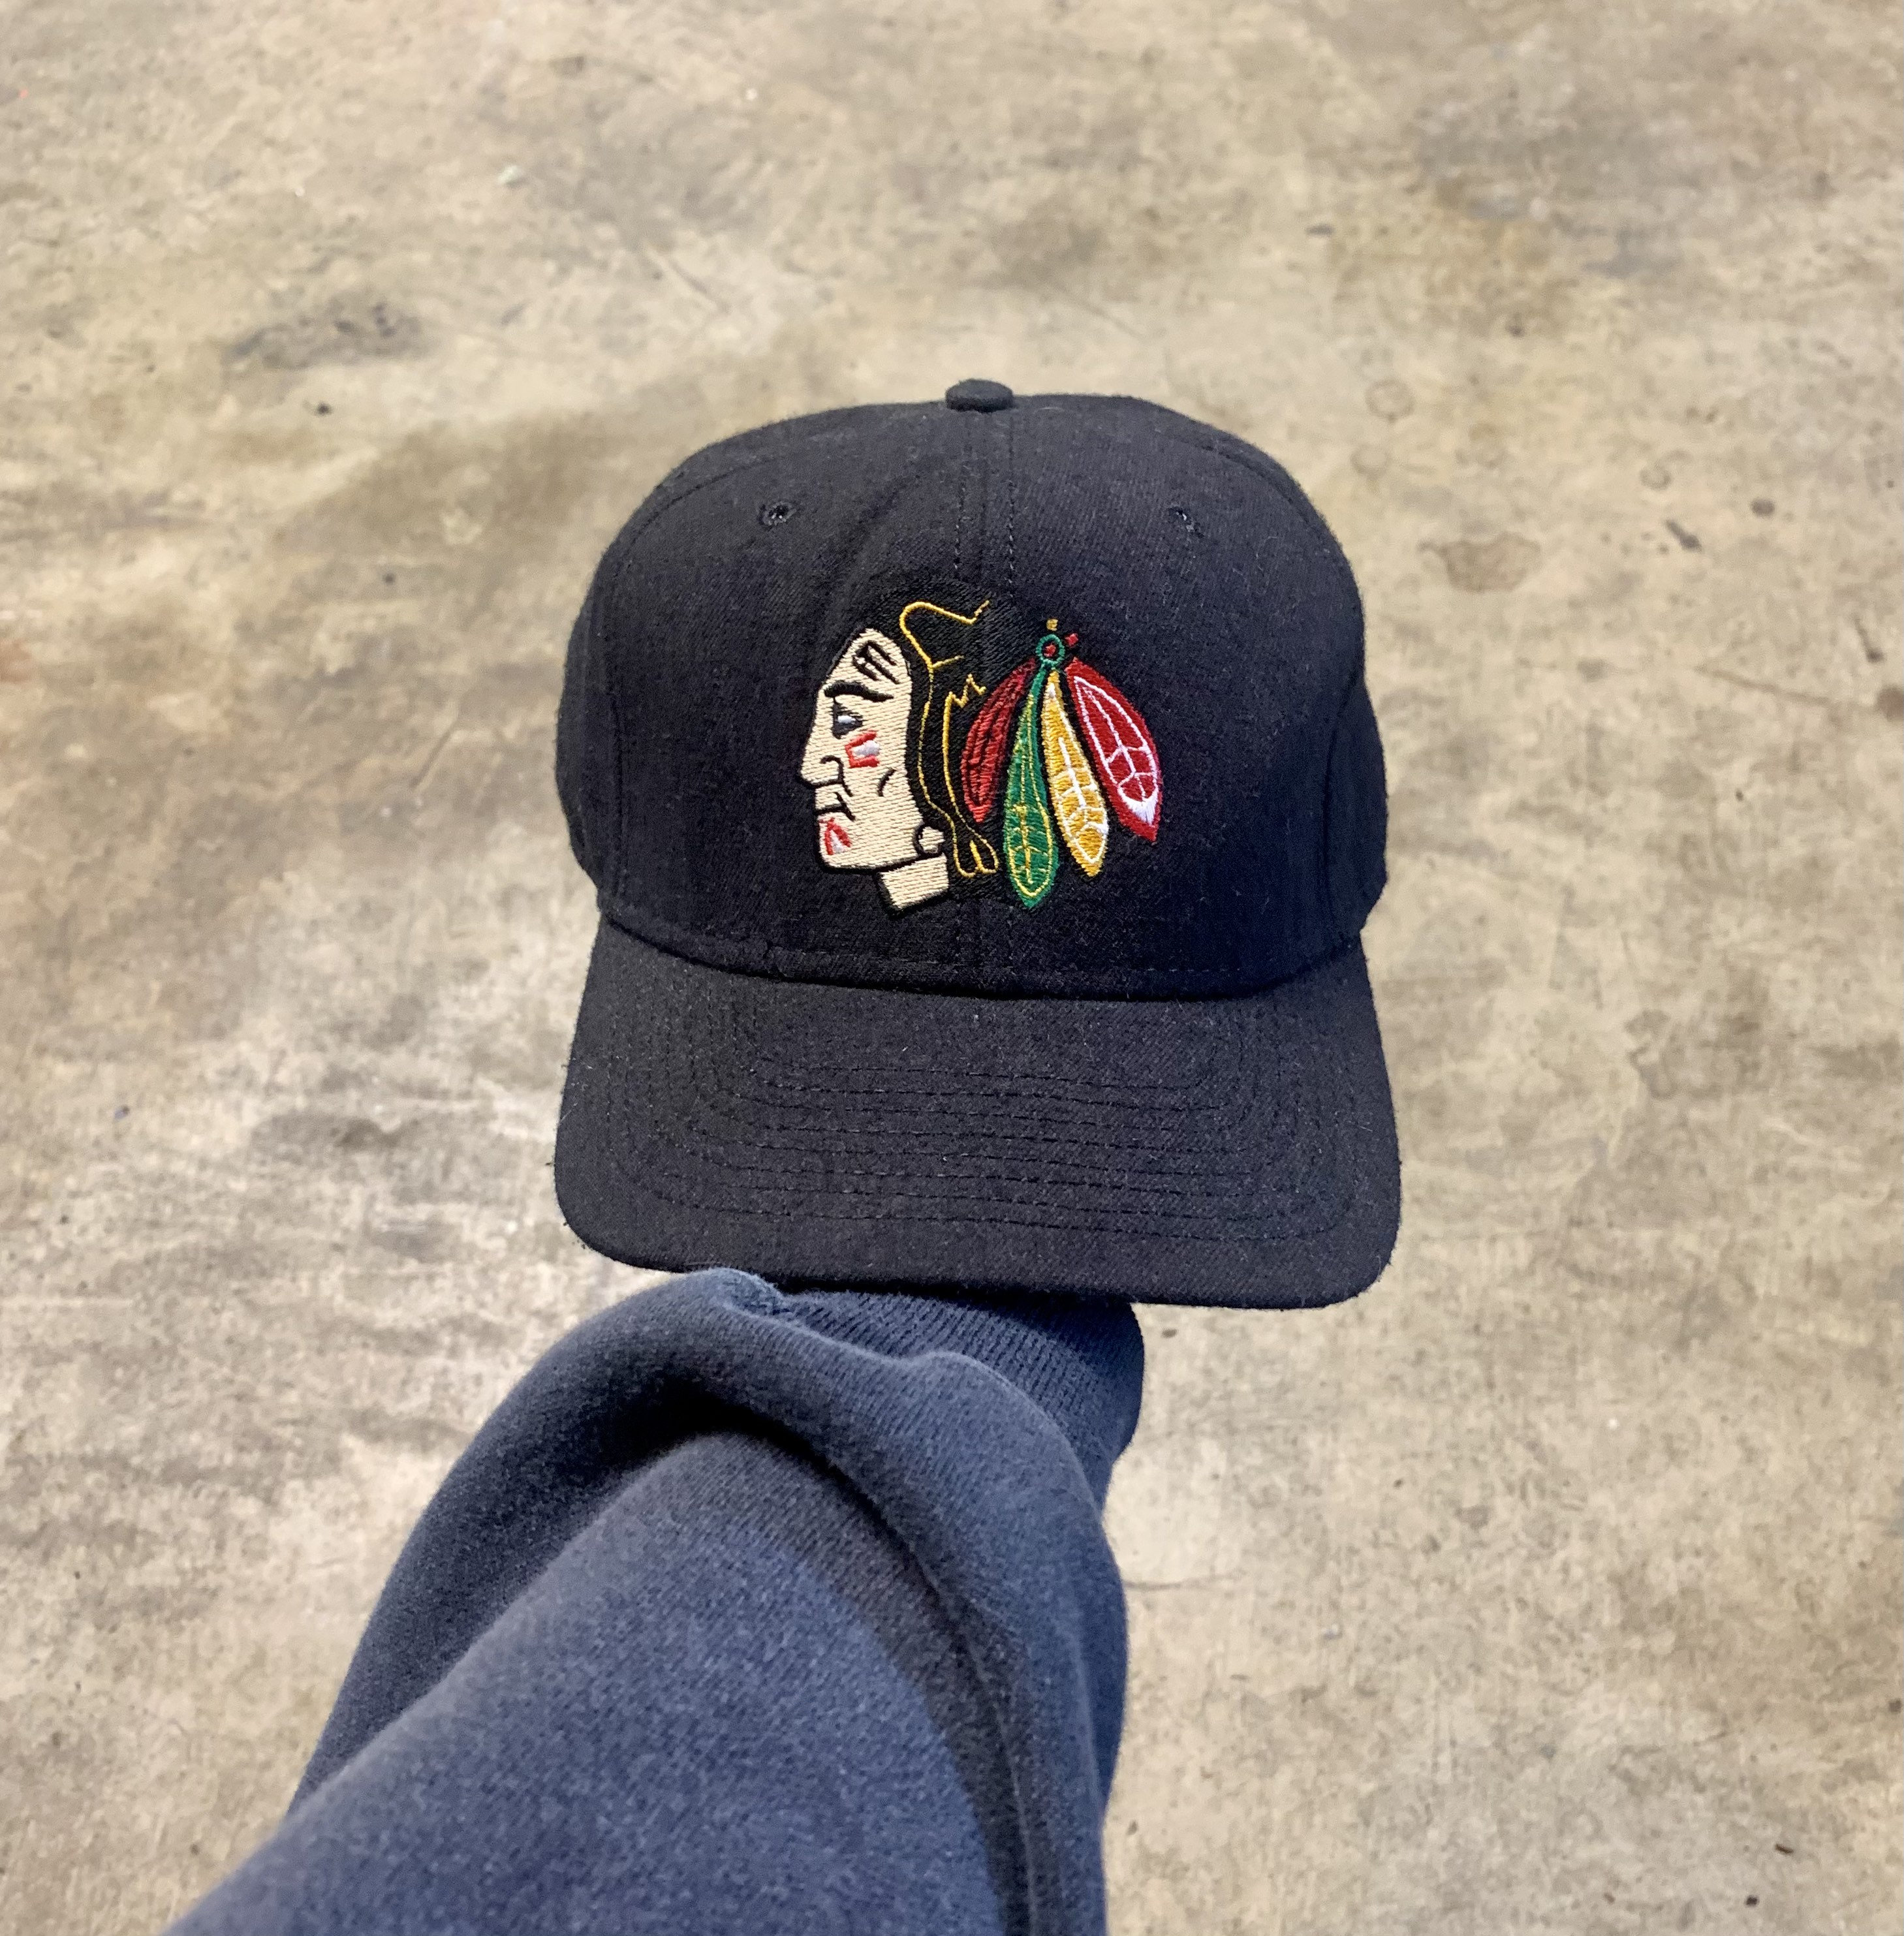 Portland Winterhawks In Minor League Hockey Fan Apparel & Souvenirs for sale